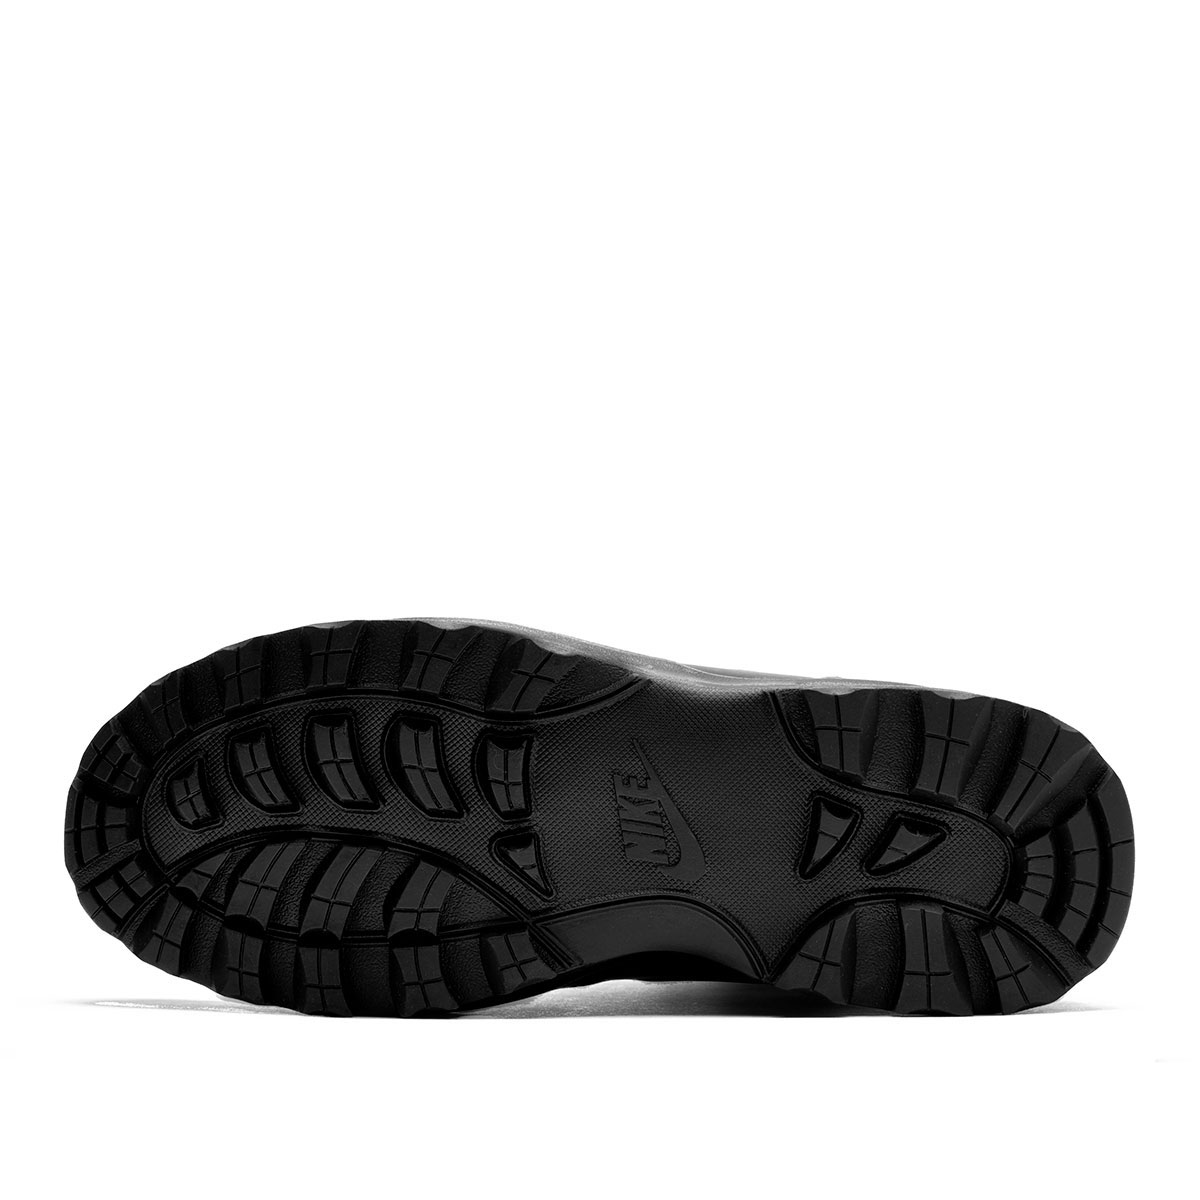 Nike Manoa Leather  454350-003